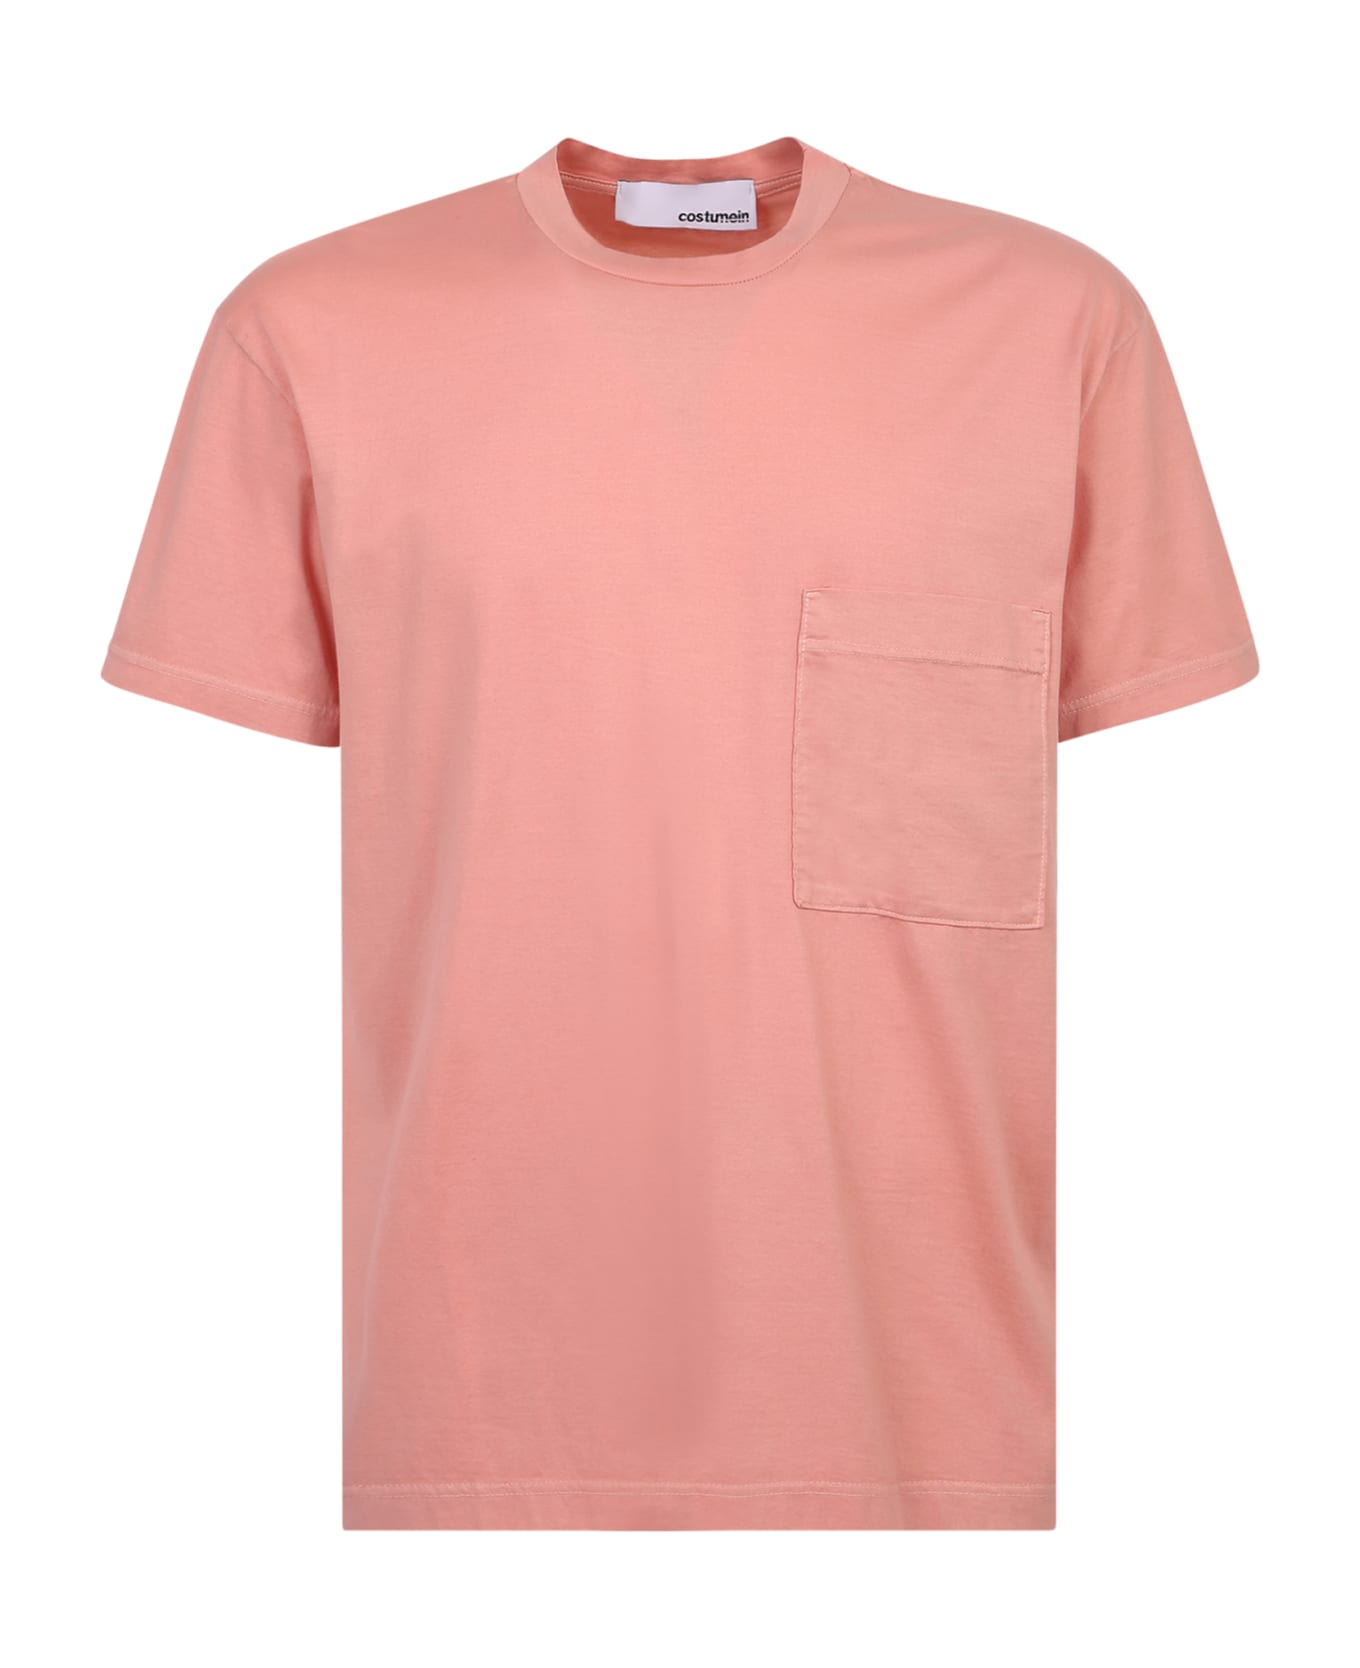 Giuseppe di Morabito William Cotton T-shirt - Pink